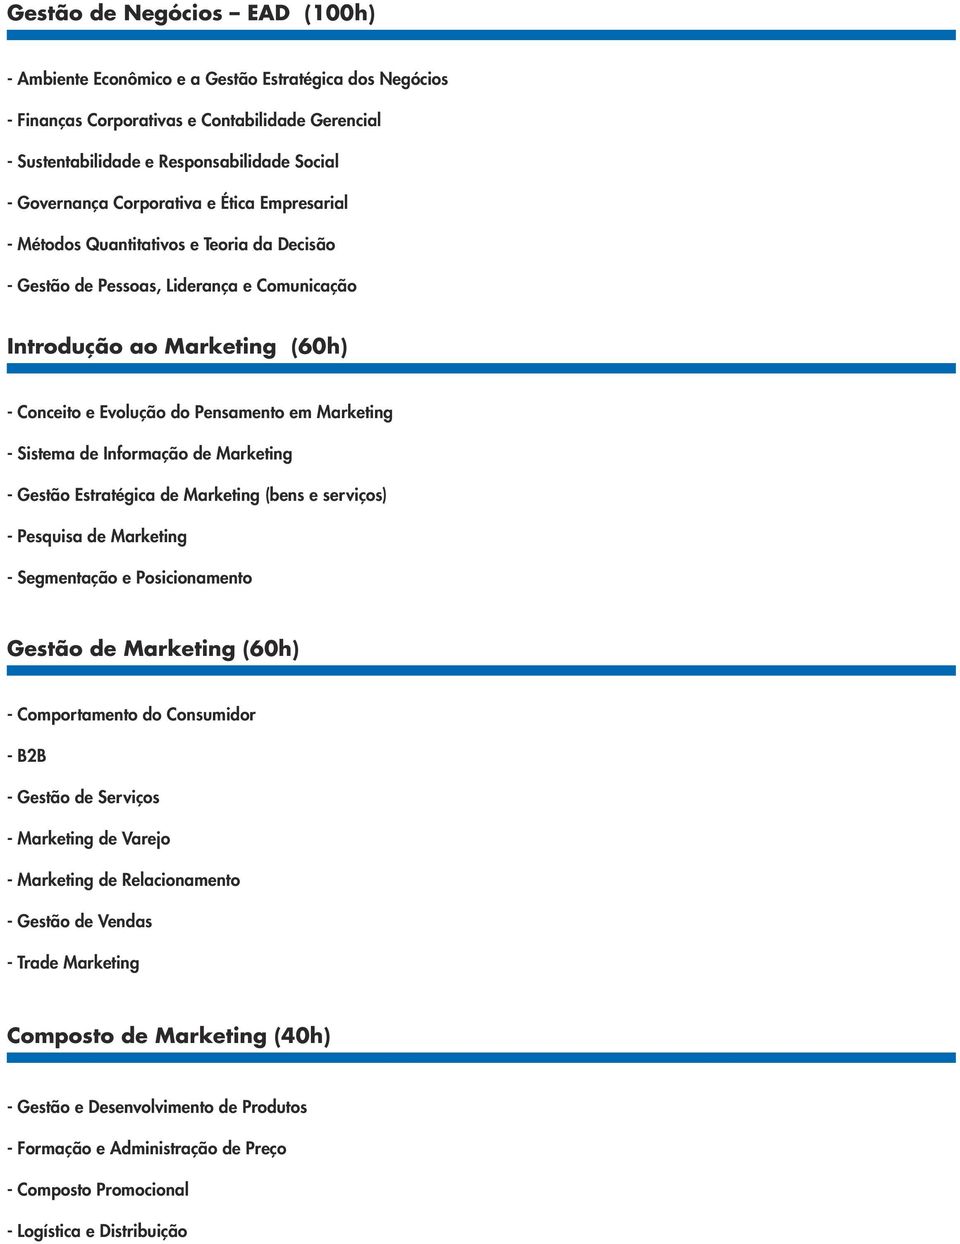 - Sistema de Informação de Marketing - Gestão Estratégica de Marketing (bens e serviços) - Pesquisa de Marketing - Segmentação e Posicionamento Gestão de Marketing (60h) - Comportamento do Consumidor